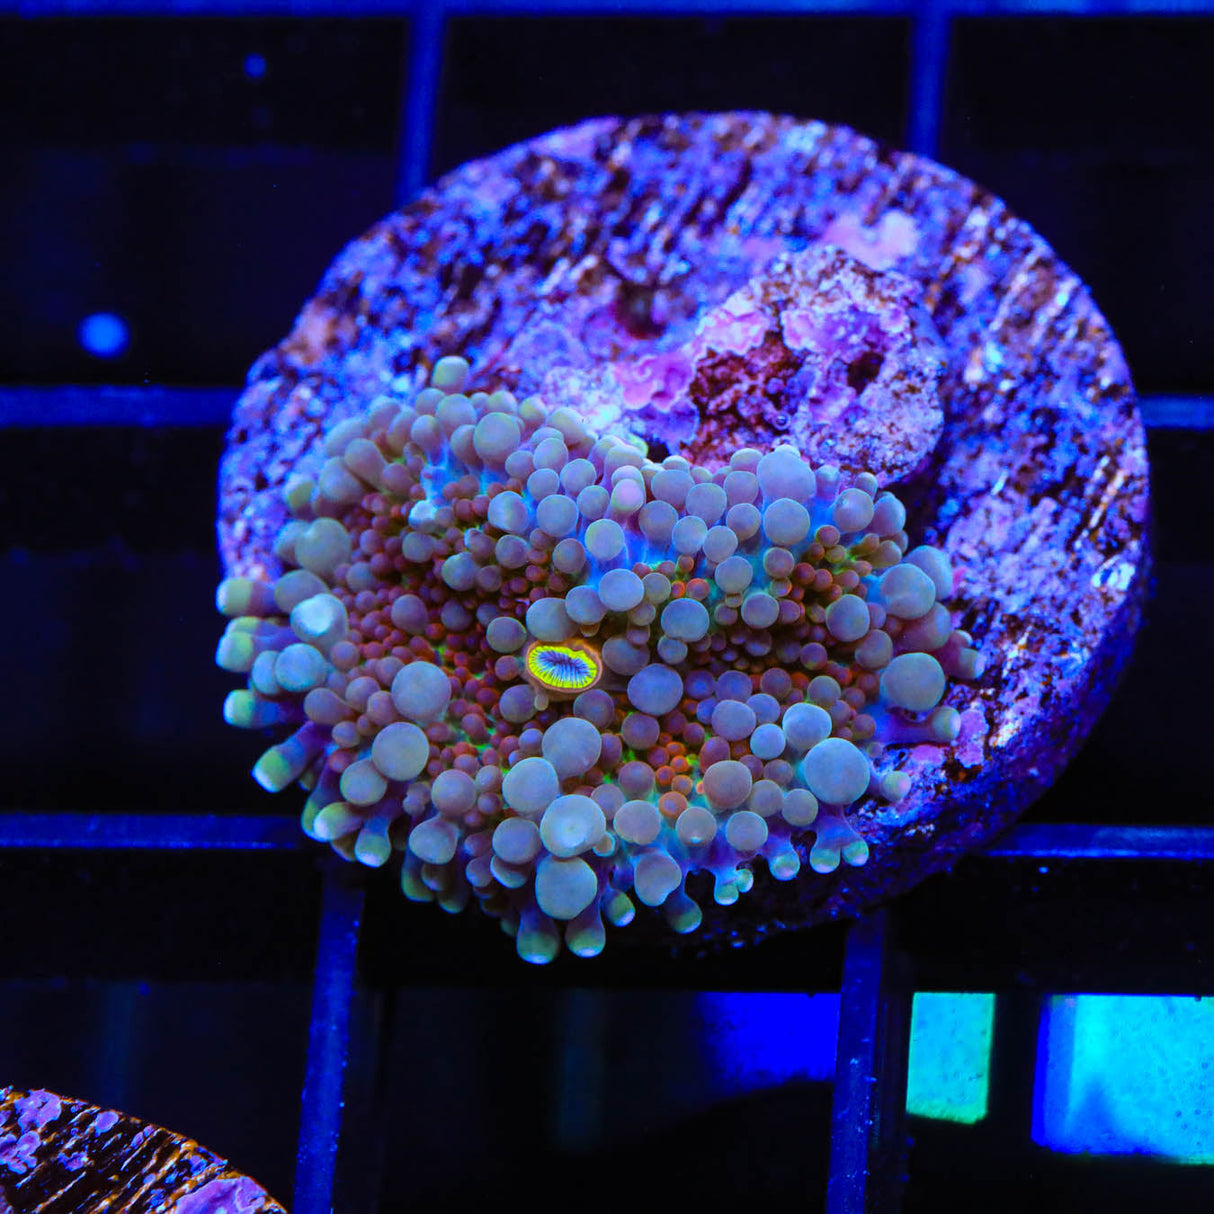 Rainbow Ricordea Coral